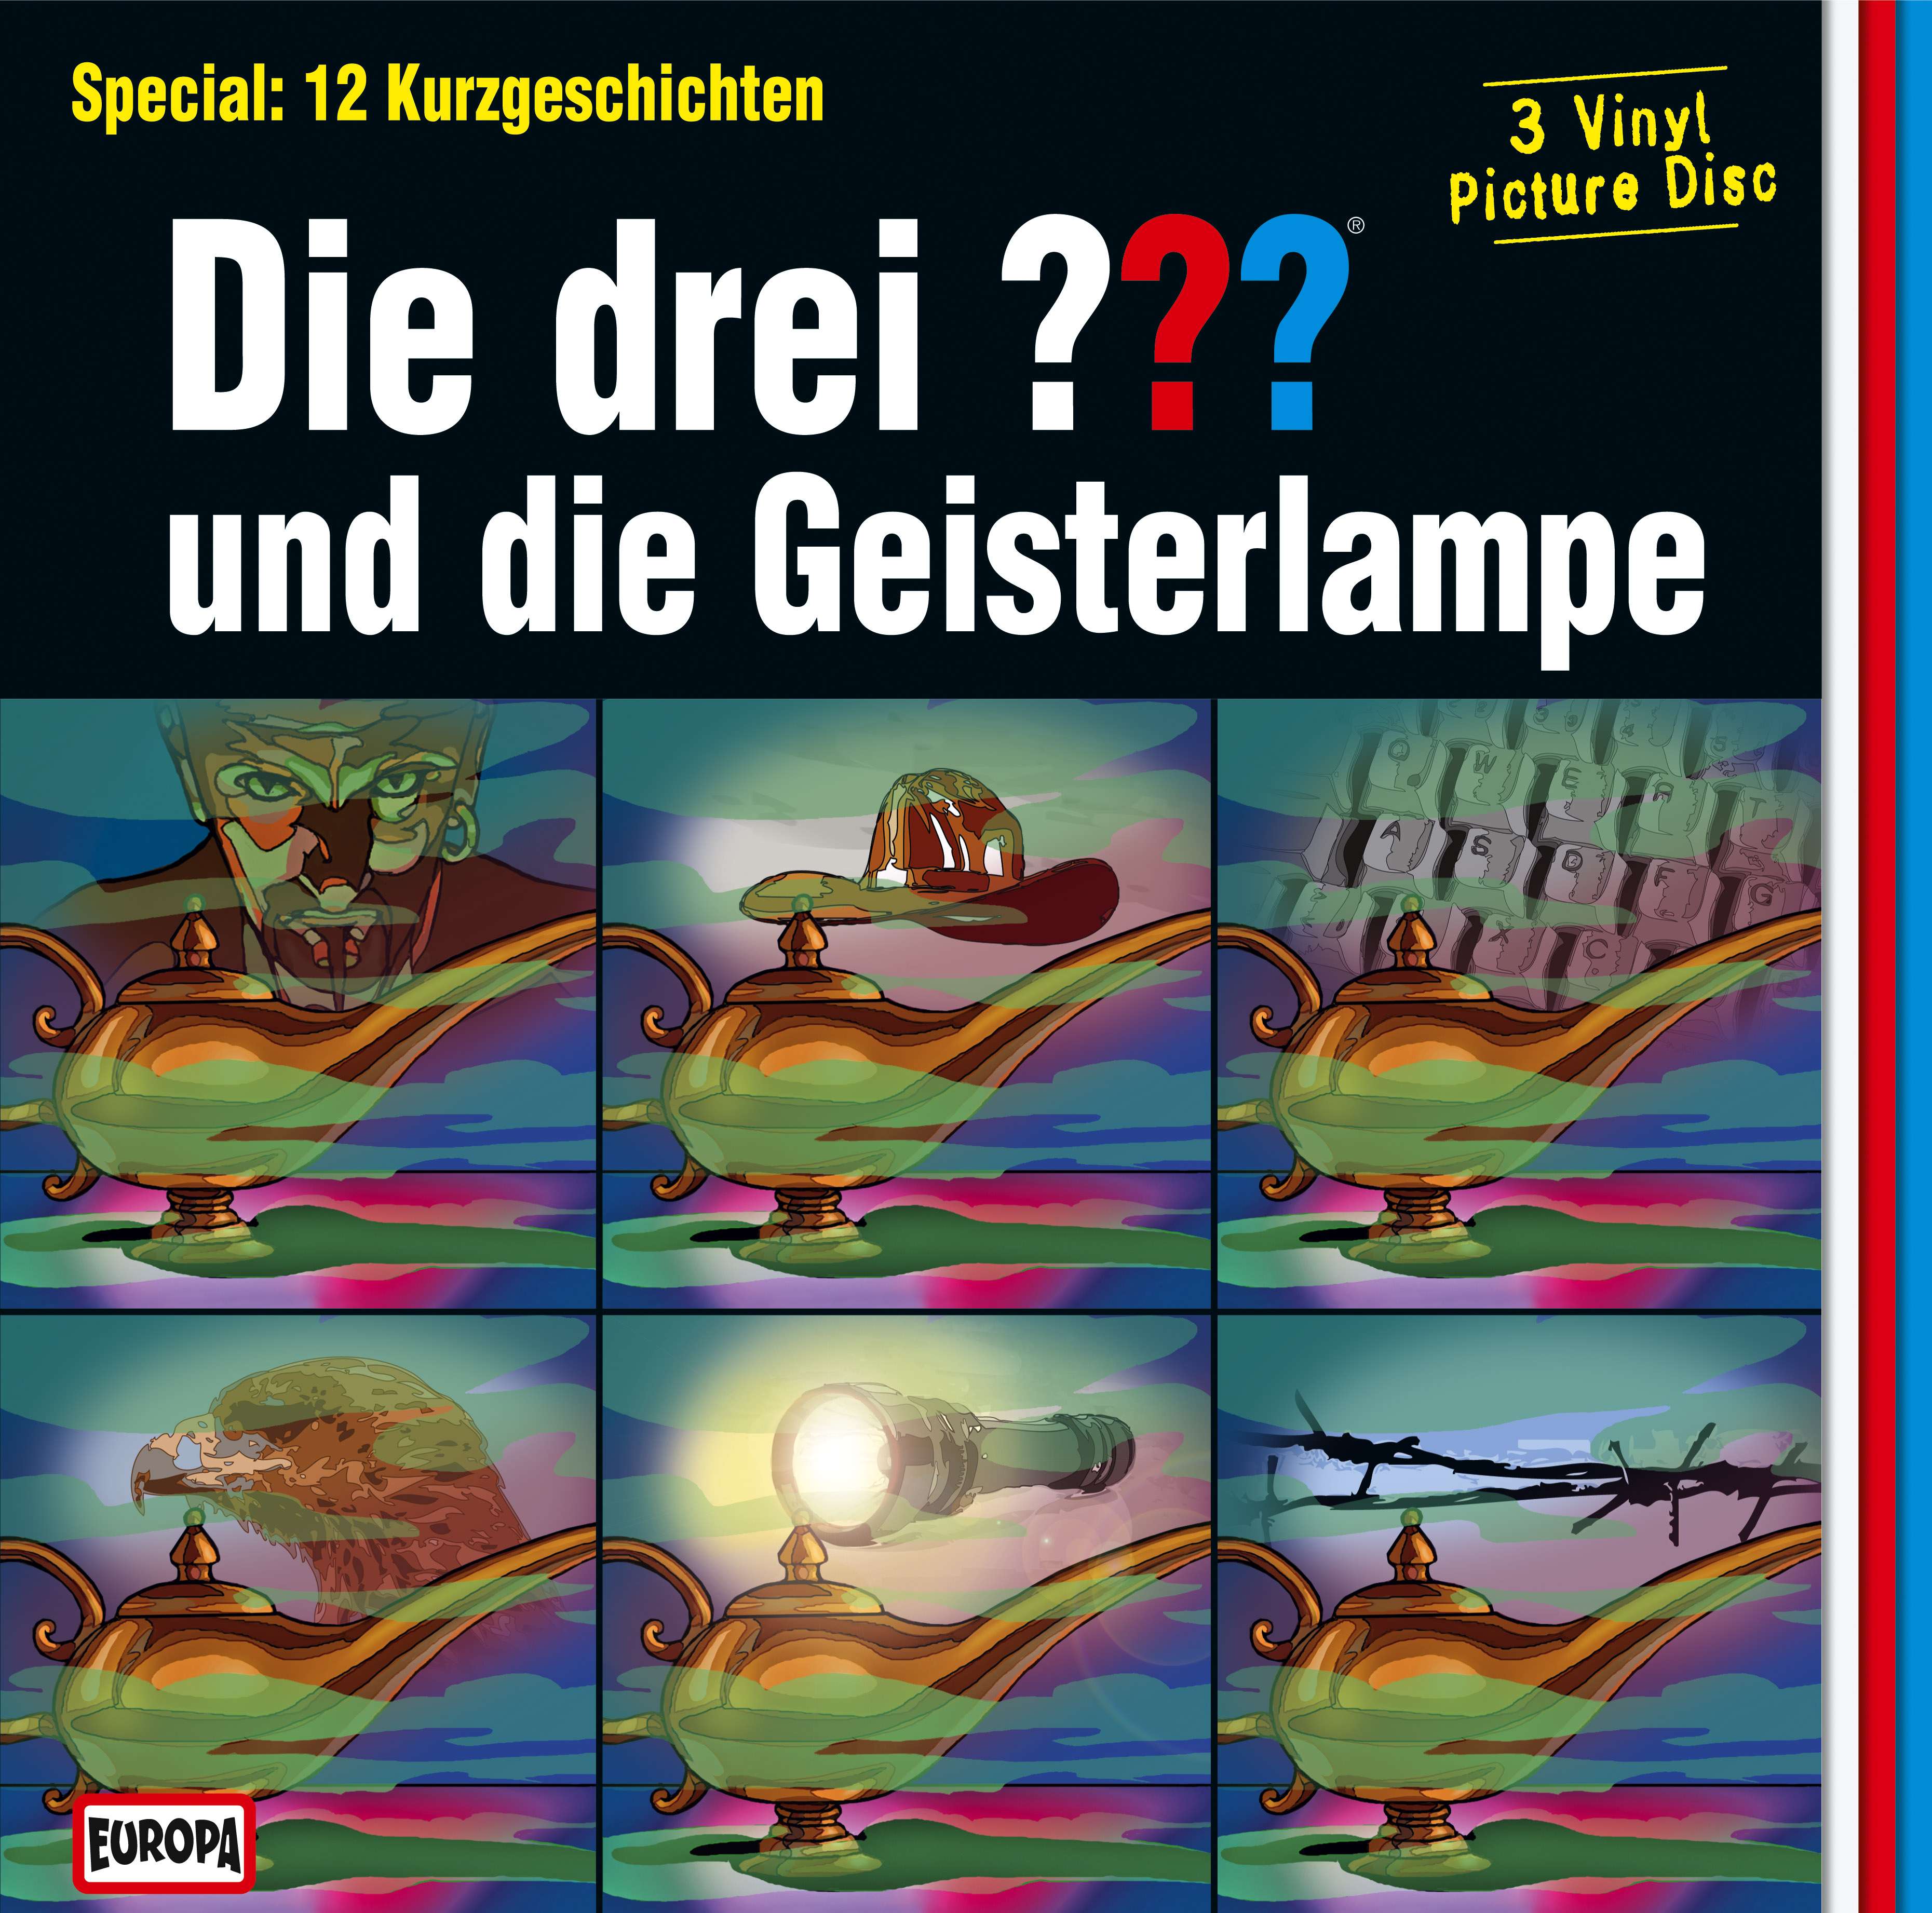 Die Drei ??? (Fragezeichen), Vinyl-Special: und die Geisterlampe (Picture Vinyl)